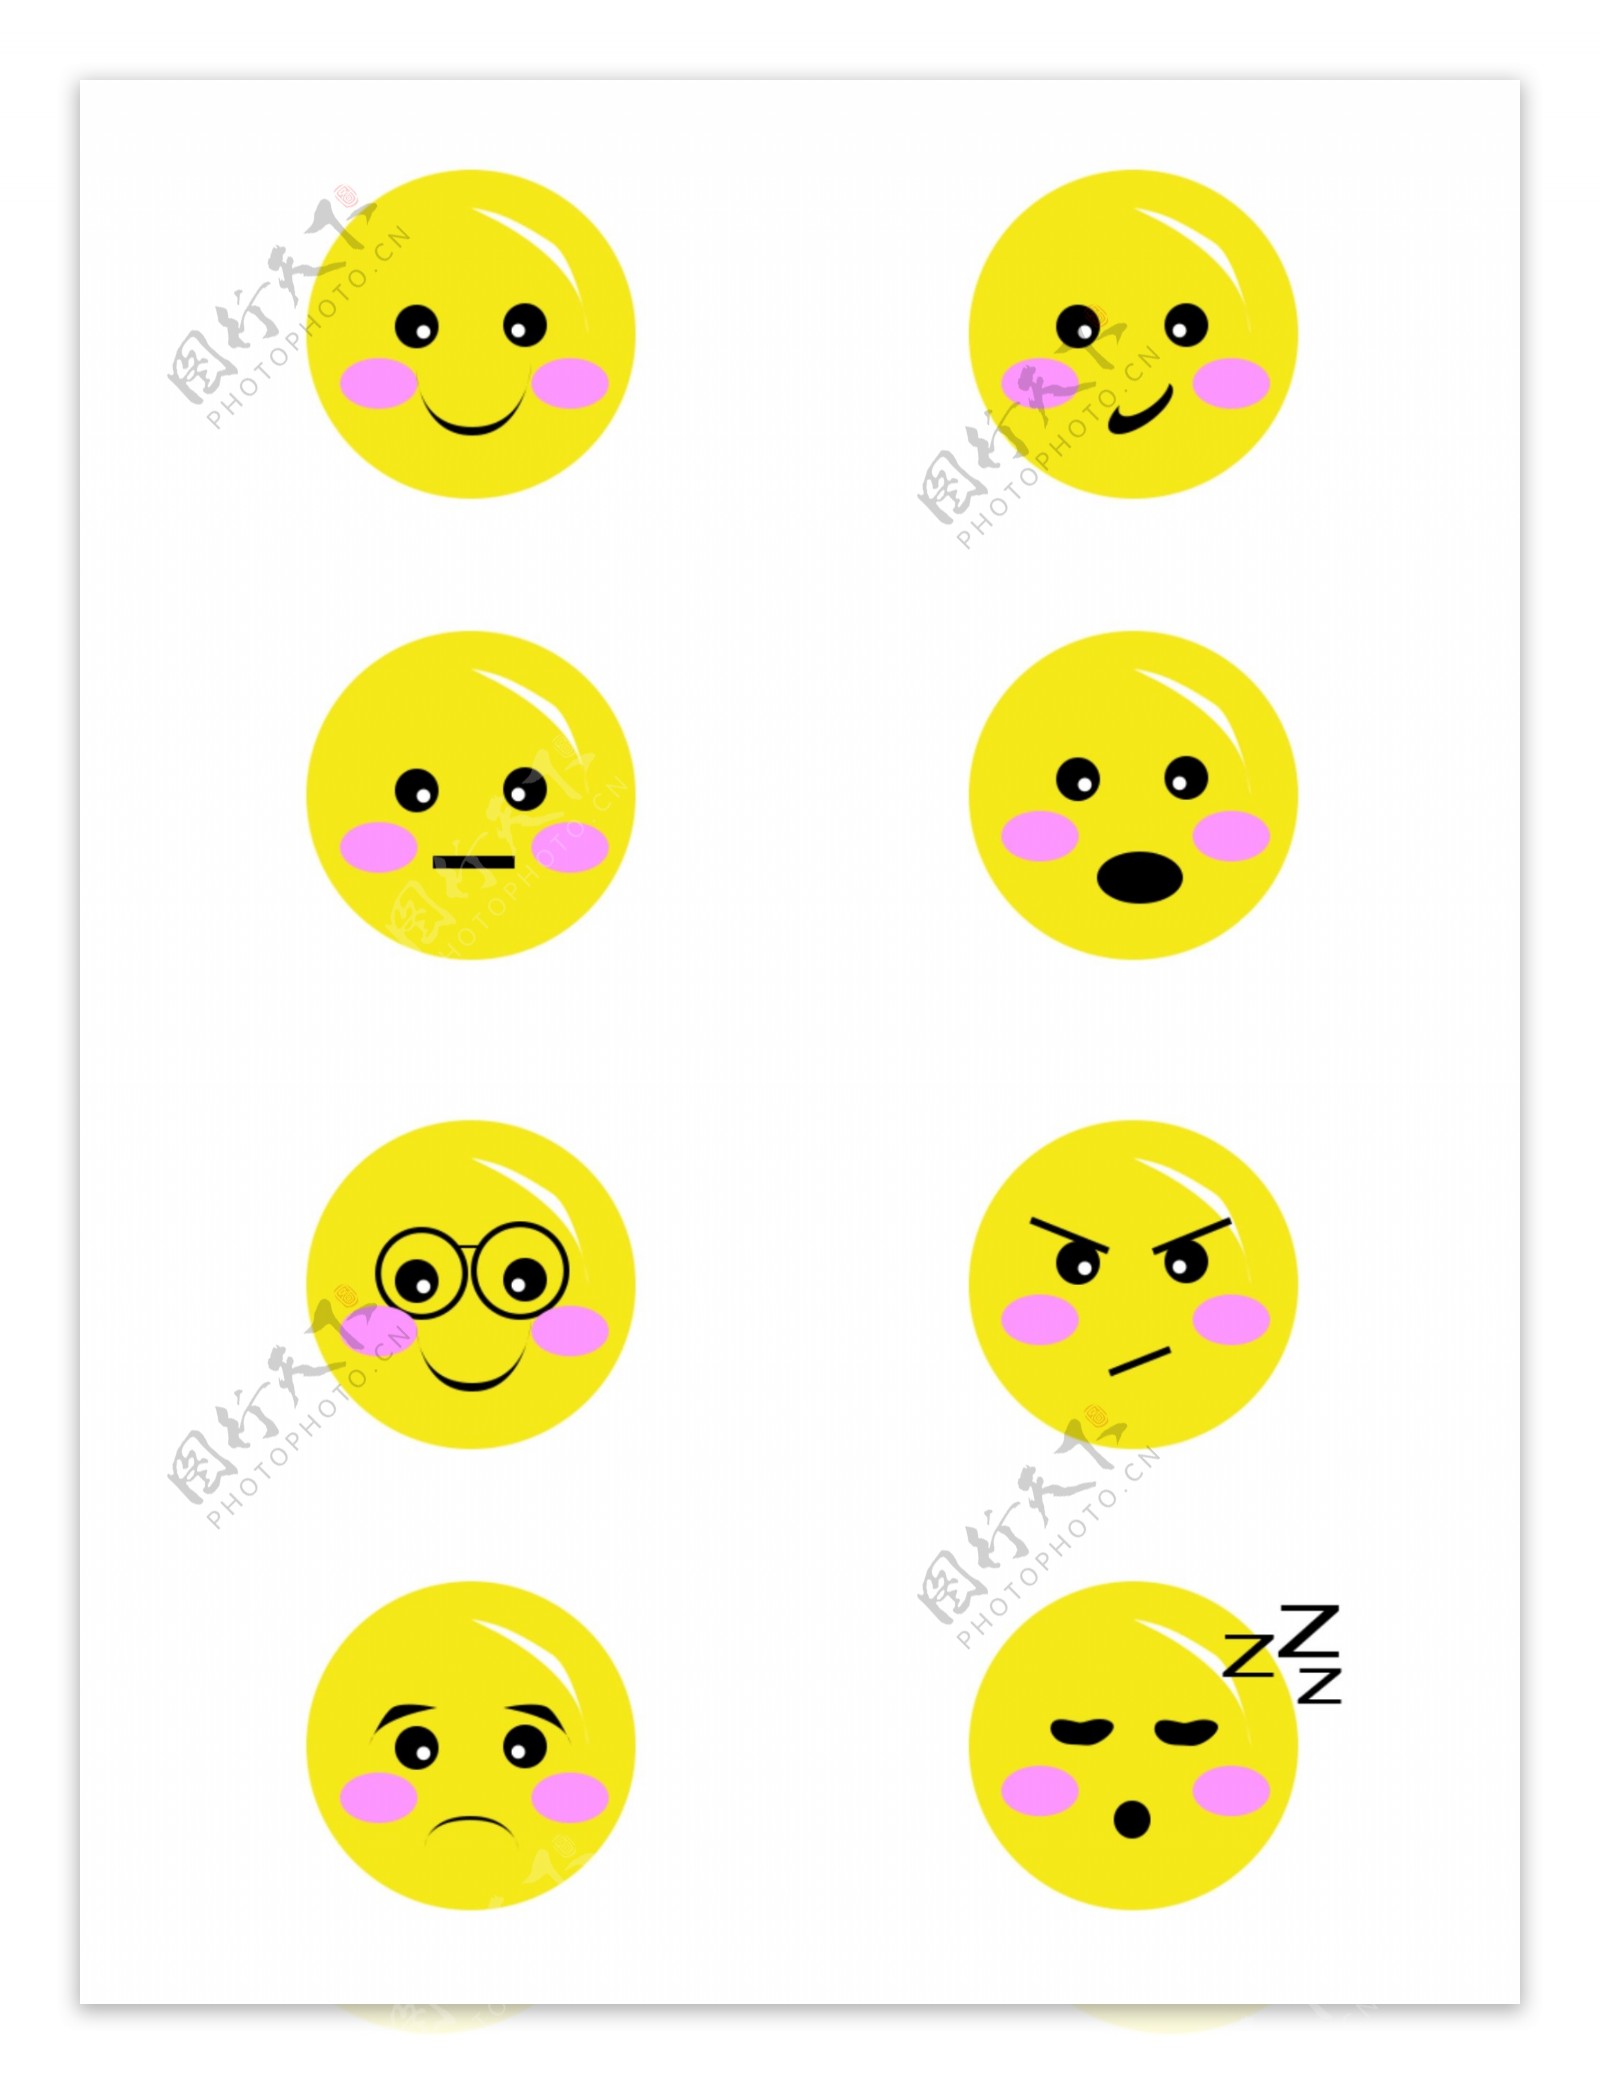 明黄色表情图标八个可商用